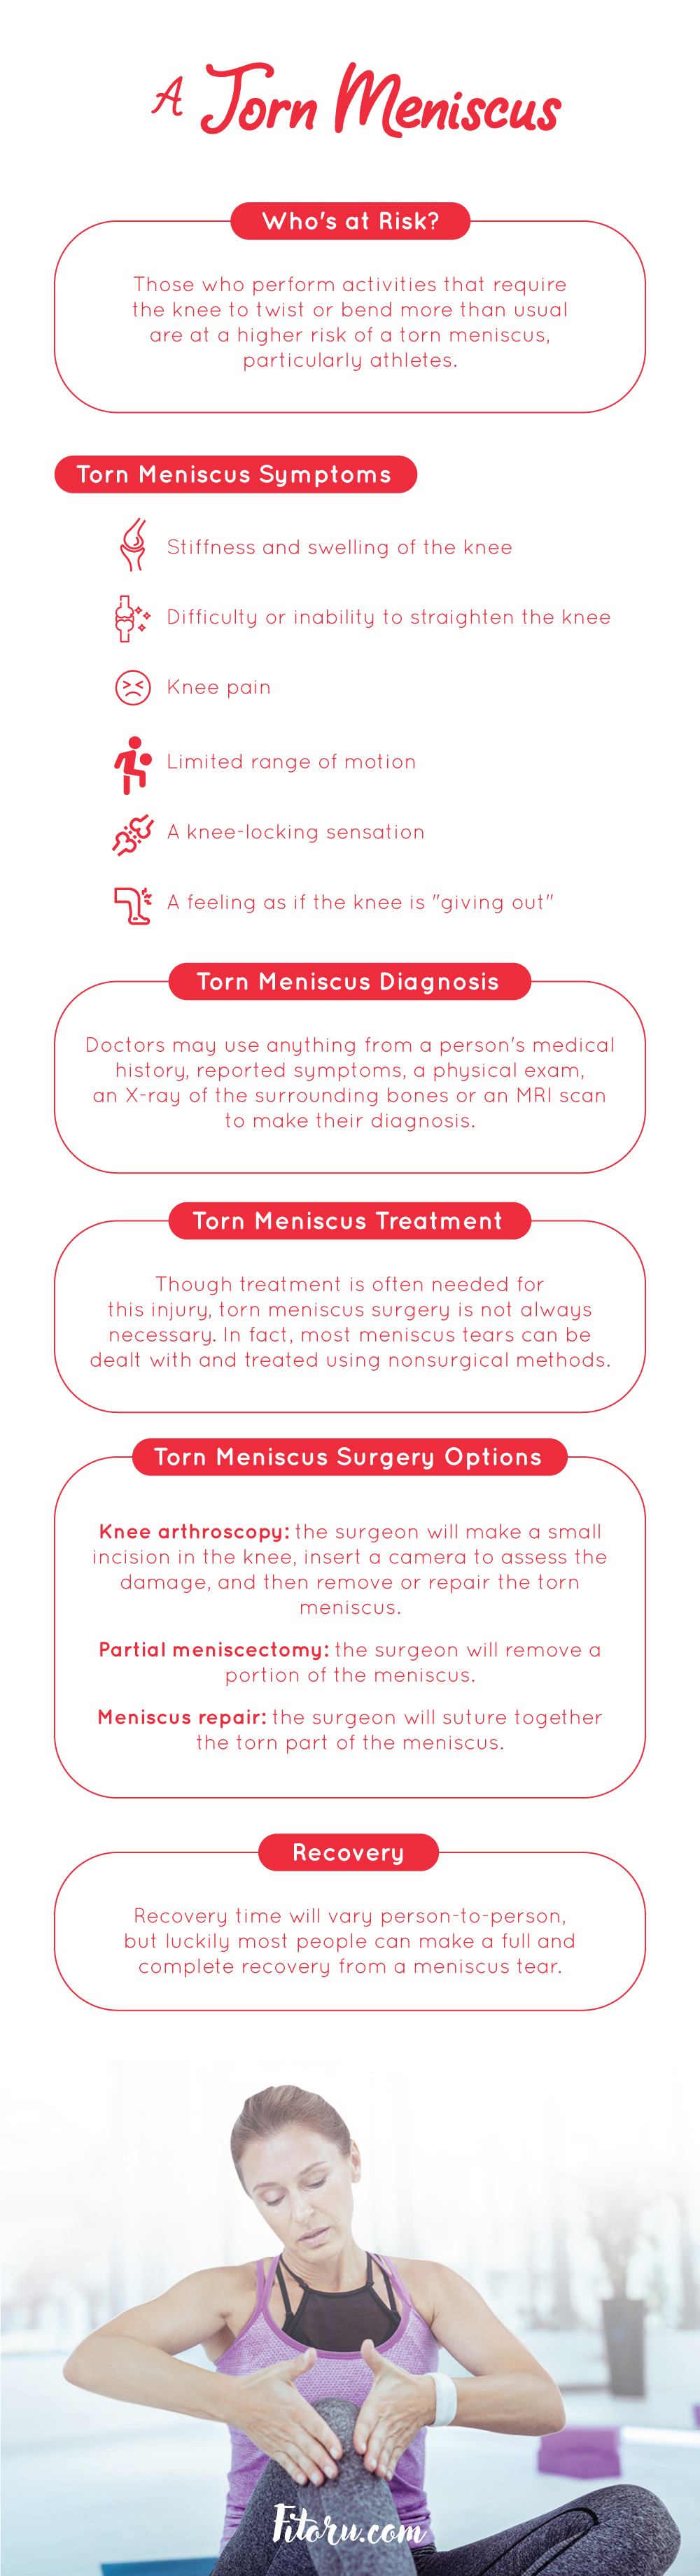 Torn meniscus: risks, symptoms, and repair options.